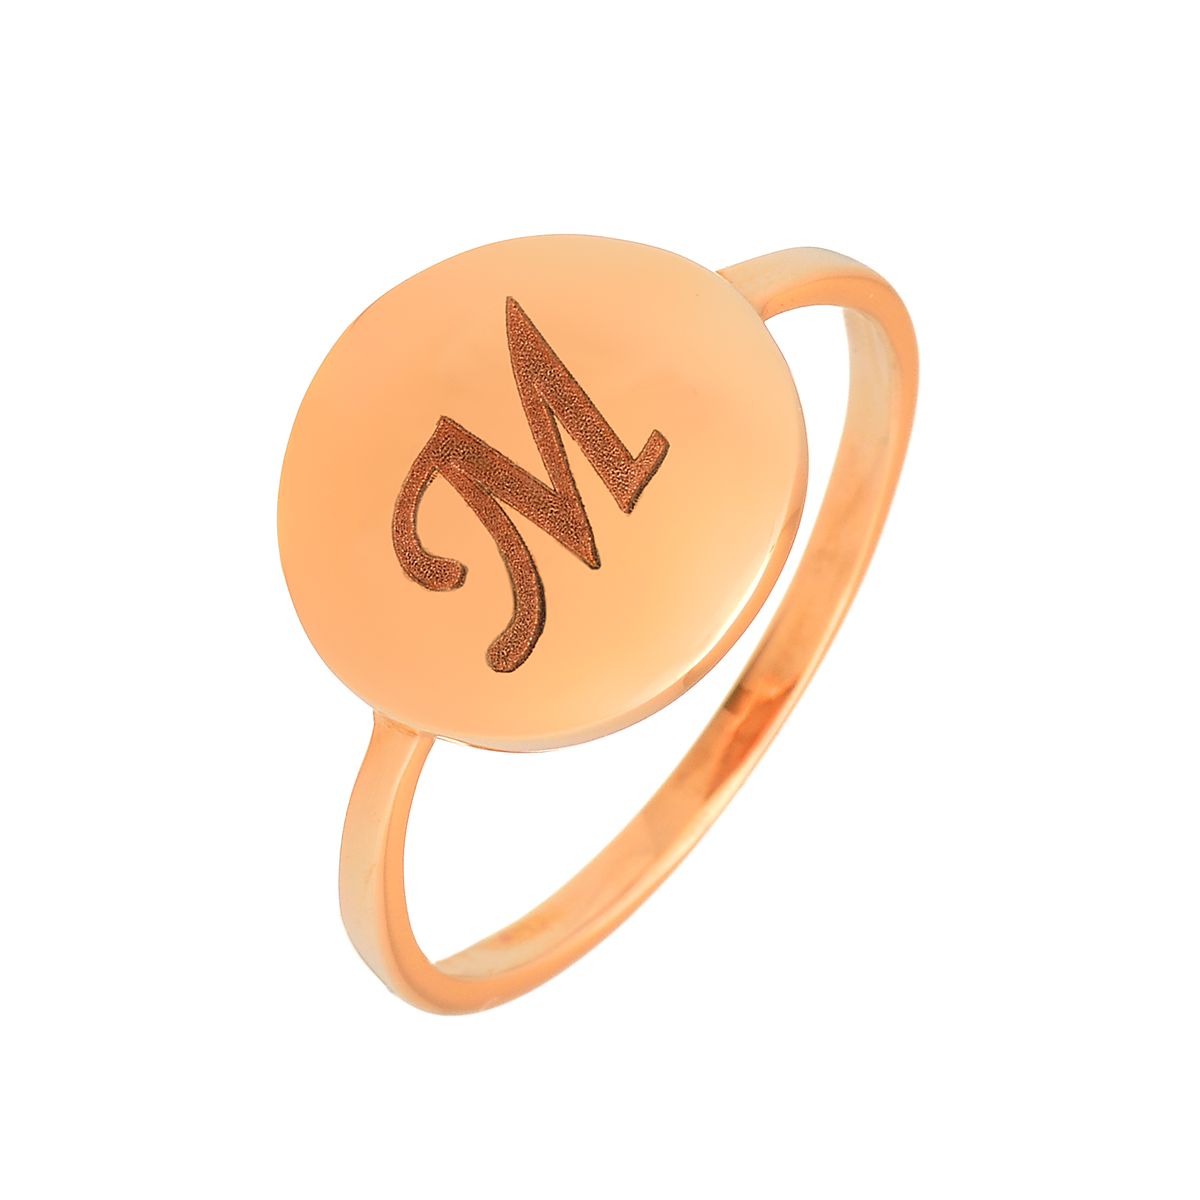 γυναικειο δαχτυλιδι με μονογραμμα